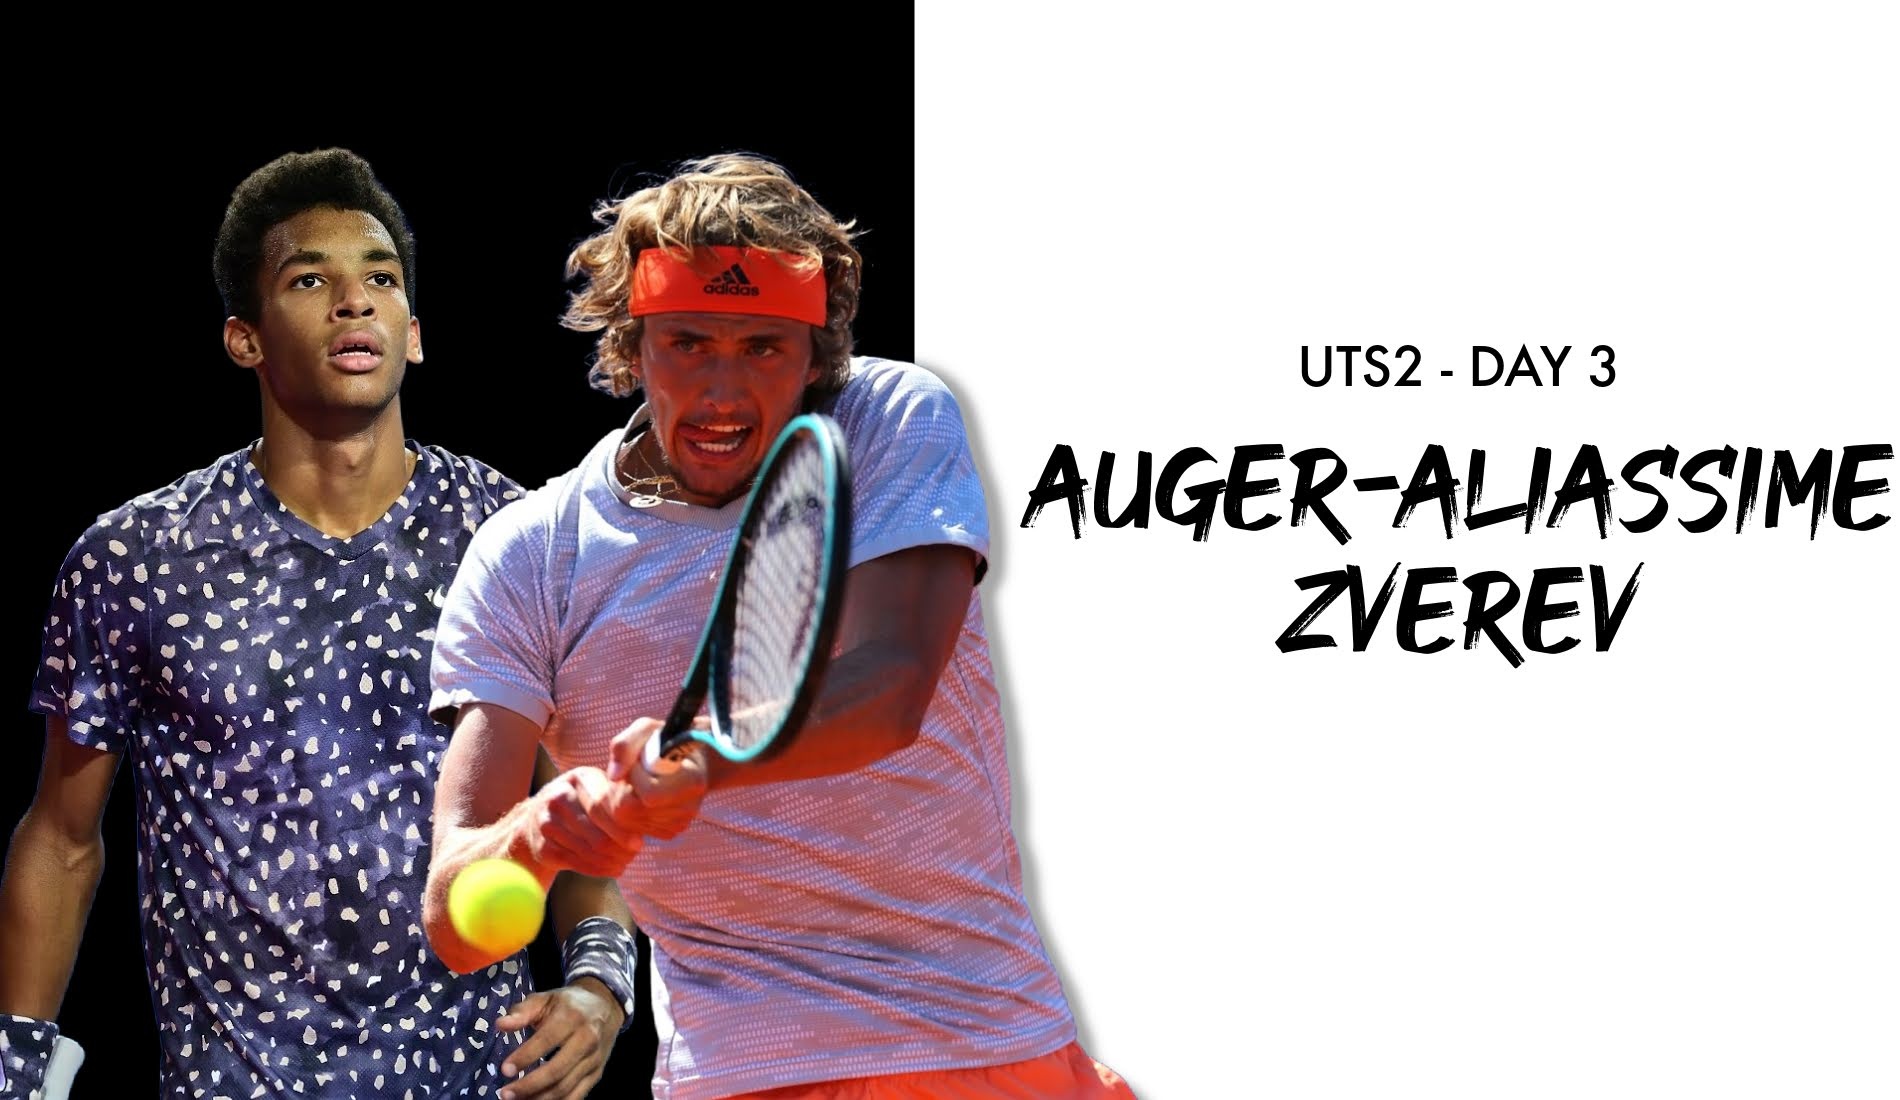 UTS2 - Day 3: Felix Auger-Aliassime vs Alexander Zverev